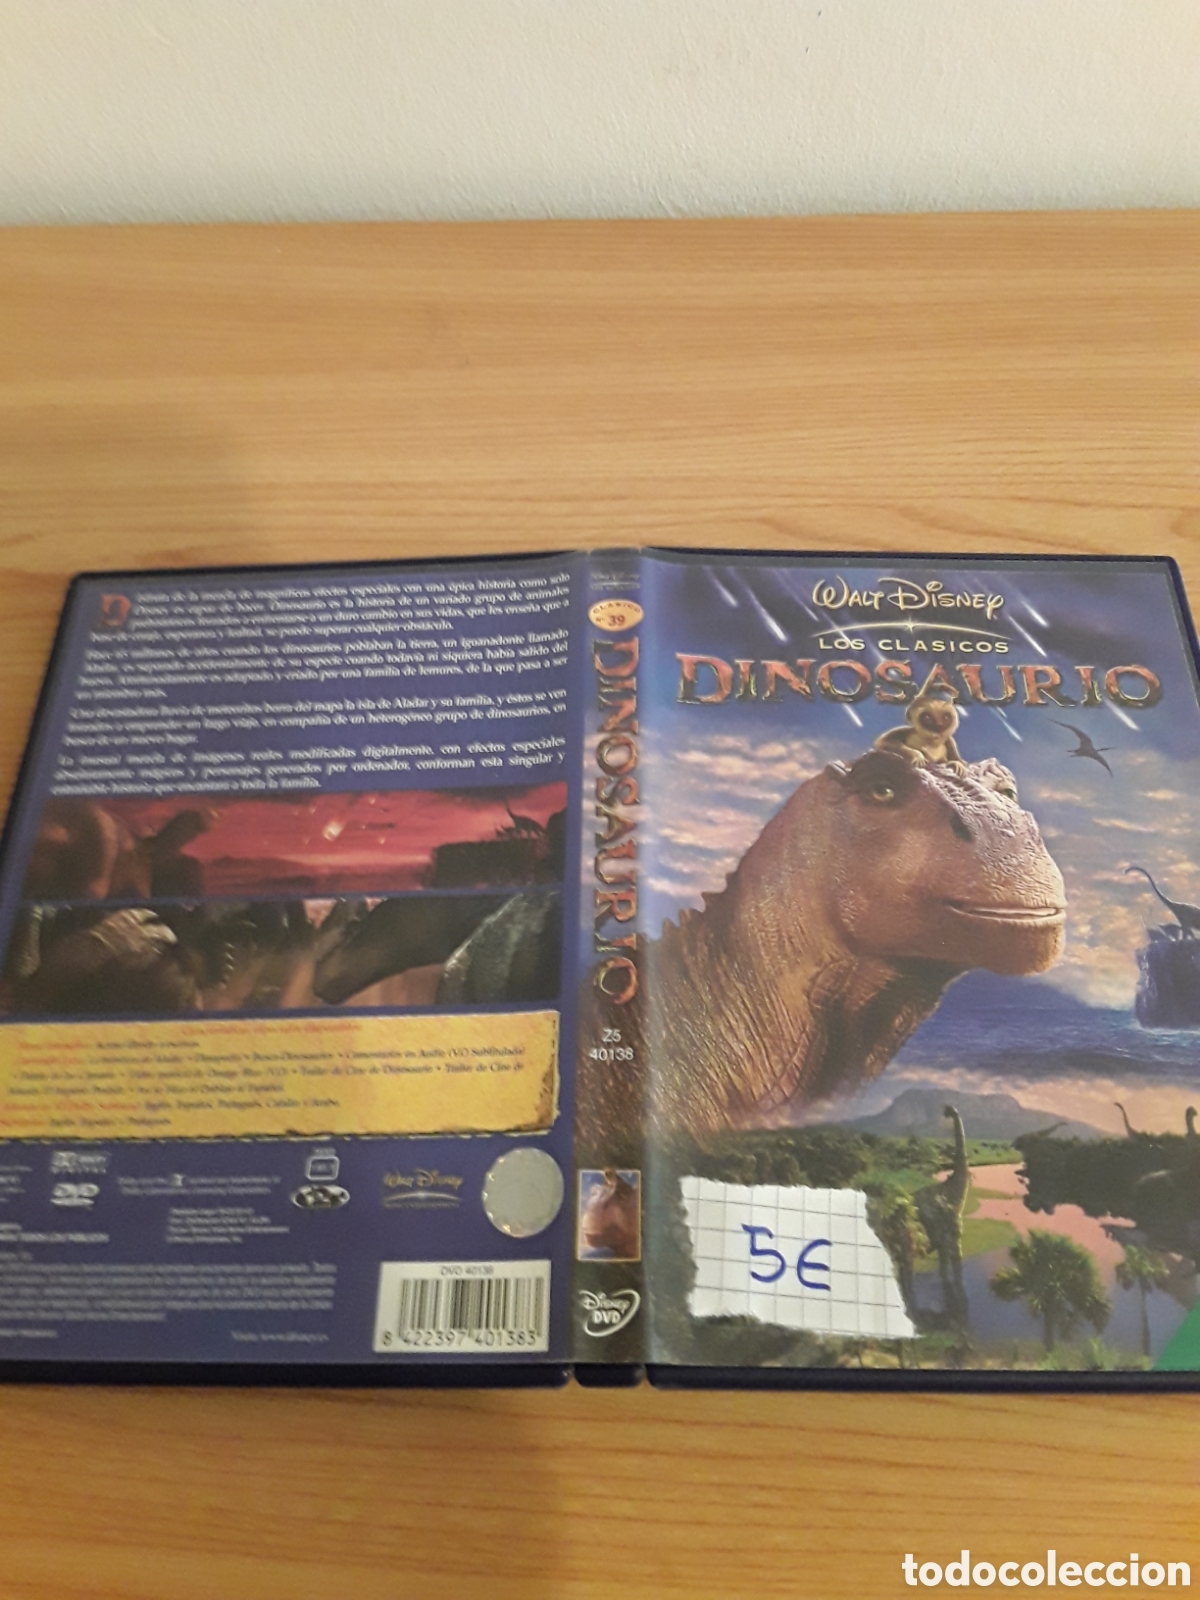 dinosaurio dvd pelicula clásicos disney - Compra venta en todocoleccion